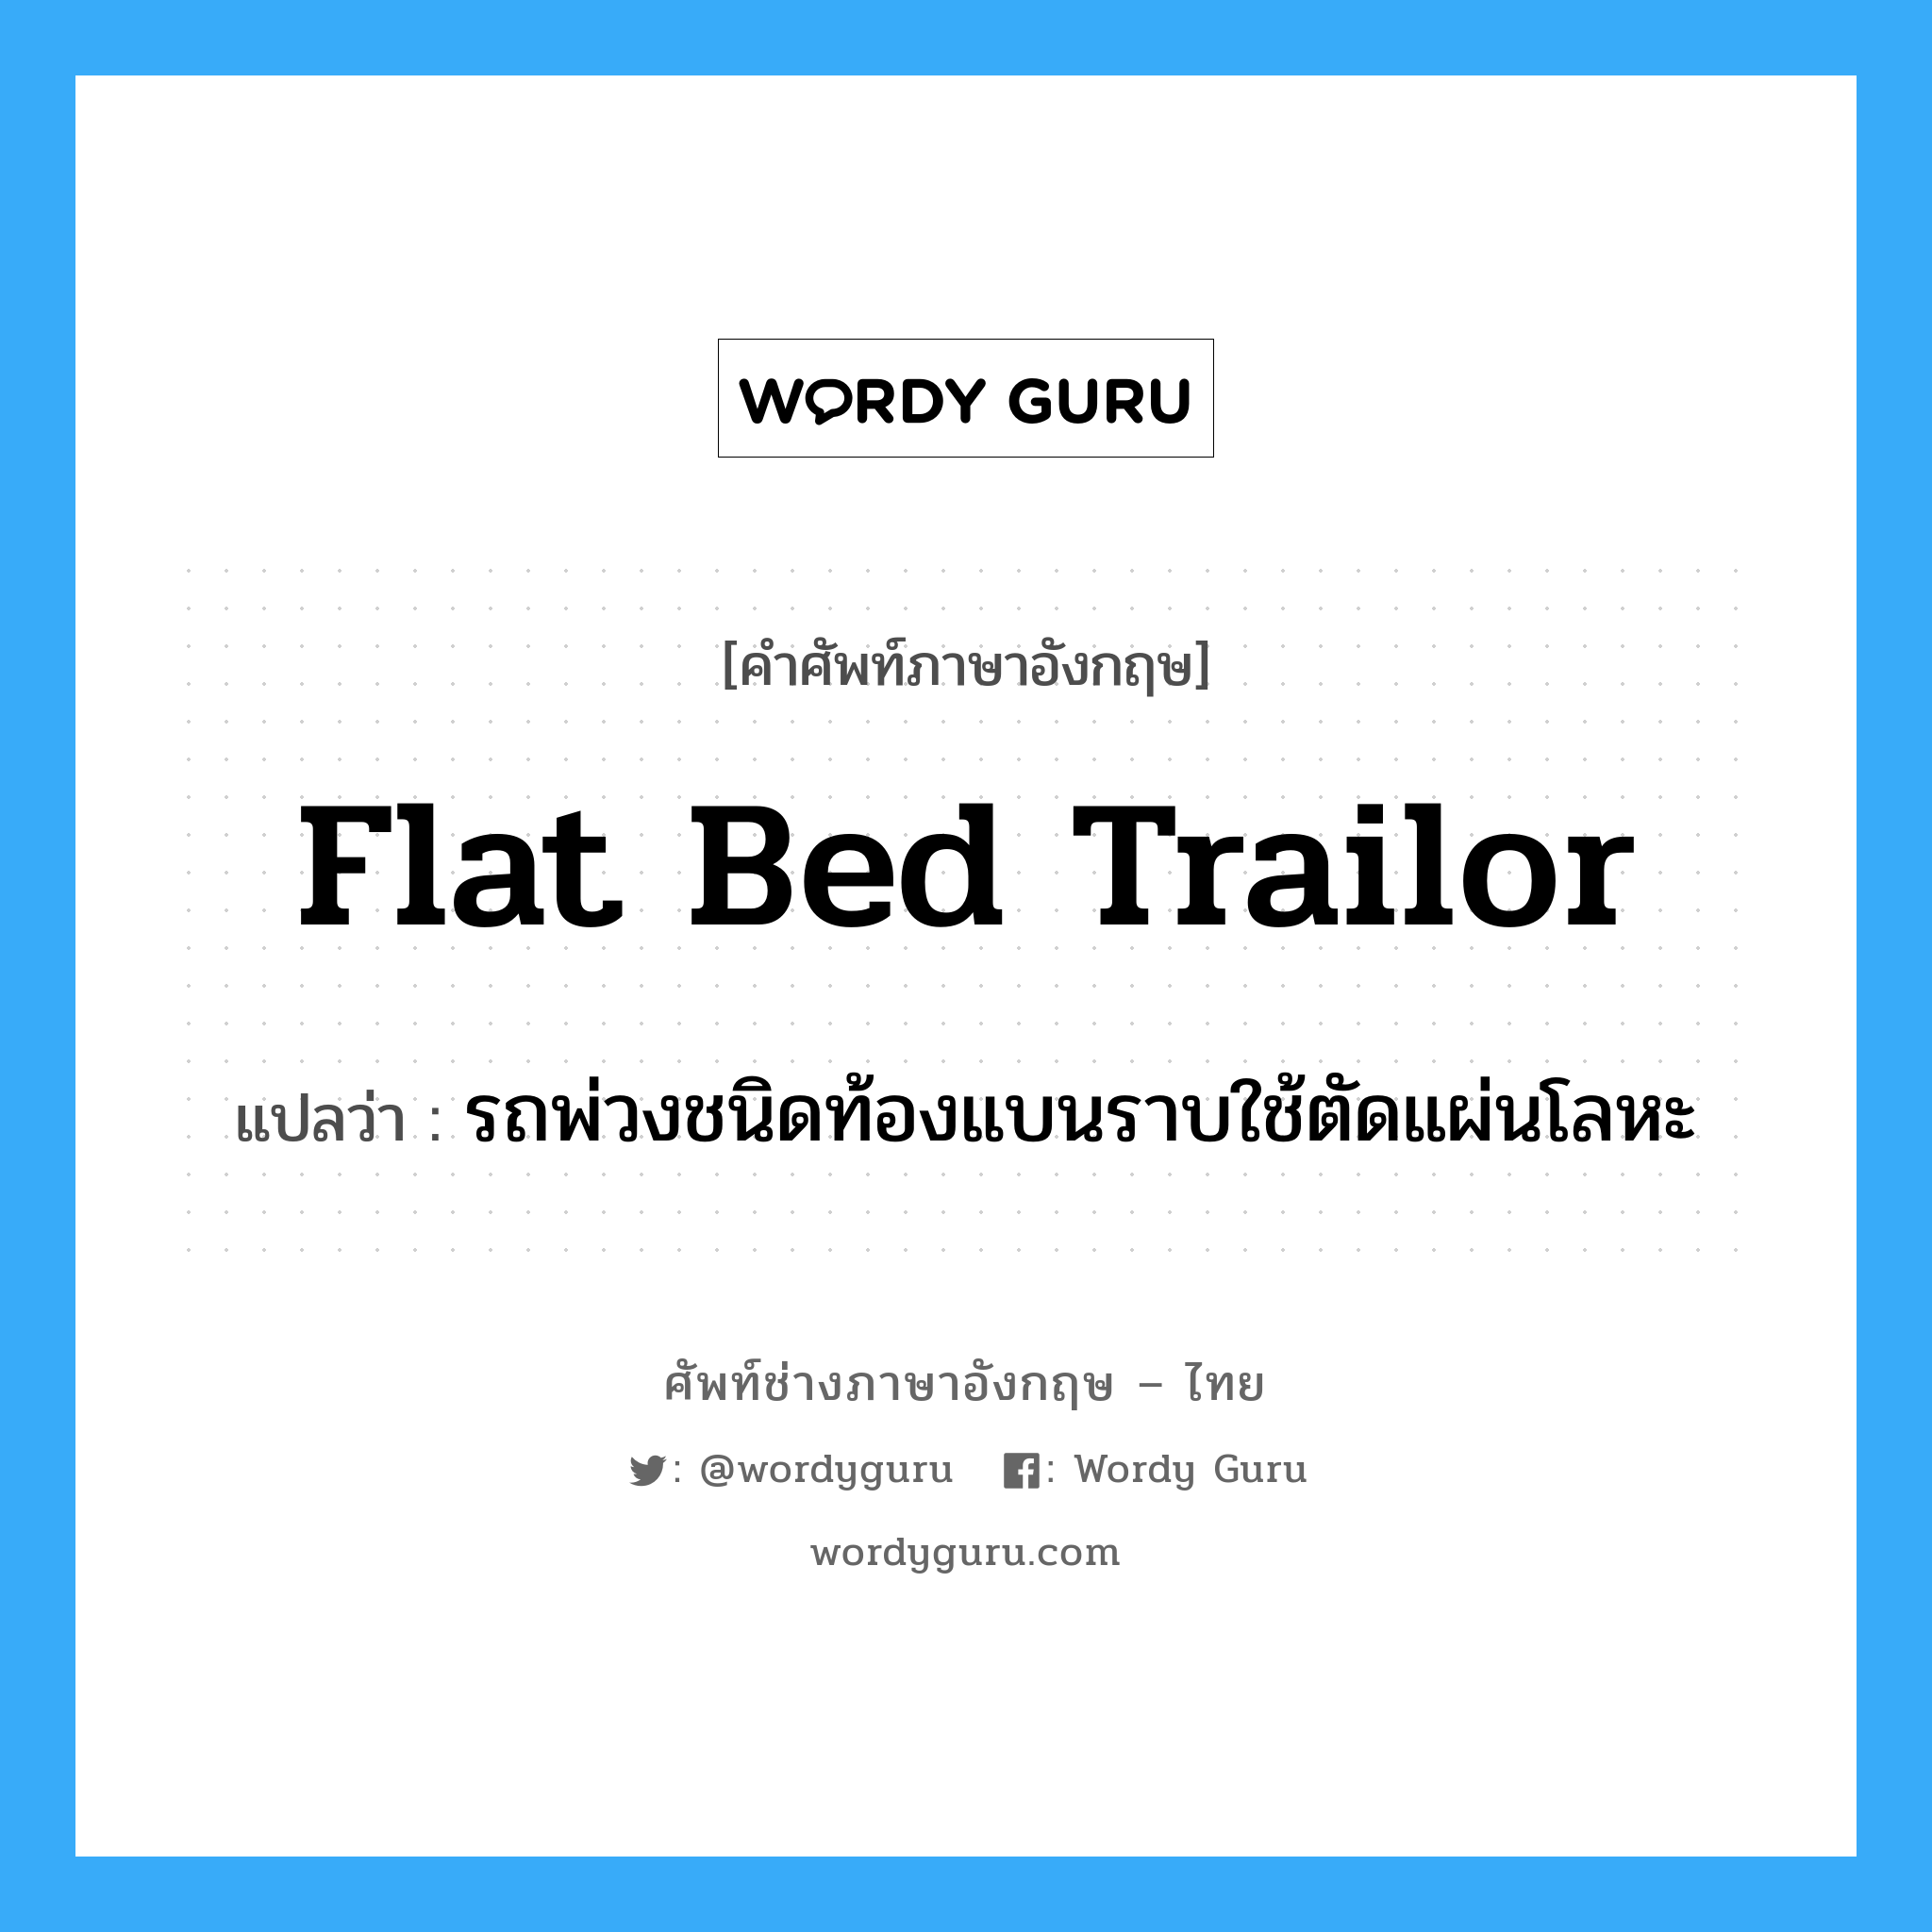 flat bed trailor แปลว่า?, คำศัพท์ช่างภาษาอังกฤษ - ไทย flat bed trailor คำศัพท์ภาษาอังกฤษ flat bed trailor แปลว่า รถพ่วงชนิดท้องแบนราบใช้ตัดแผ่นโลหะ